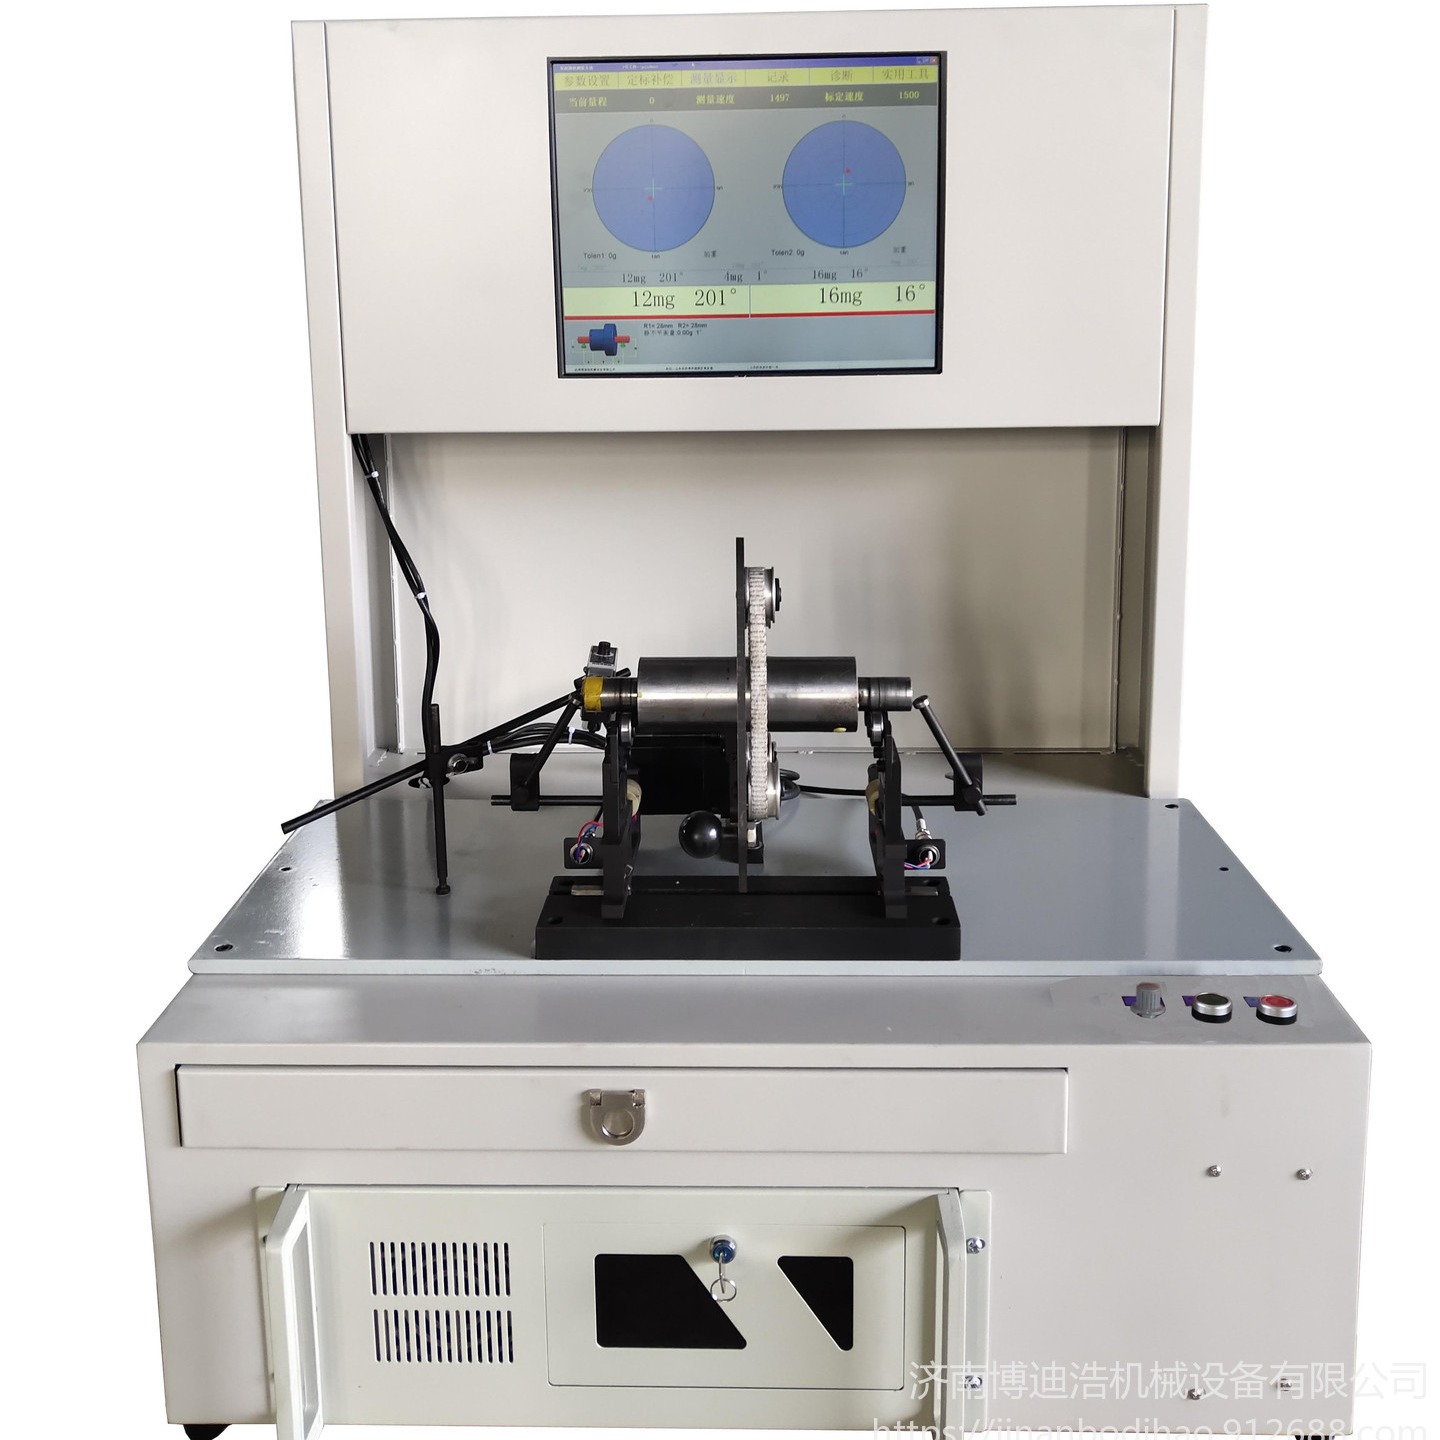 湖北二手平衡机更换测量系统平衡机测量系统升级改造 博迪浩供应全自动平衡机测量系统GB-2000图片